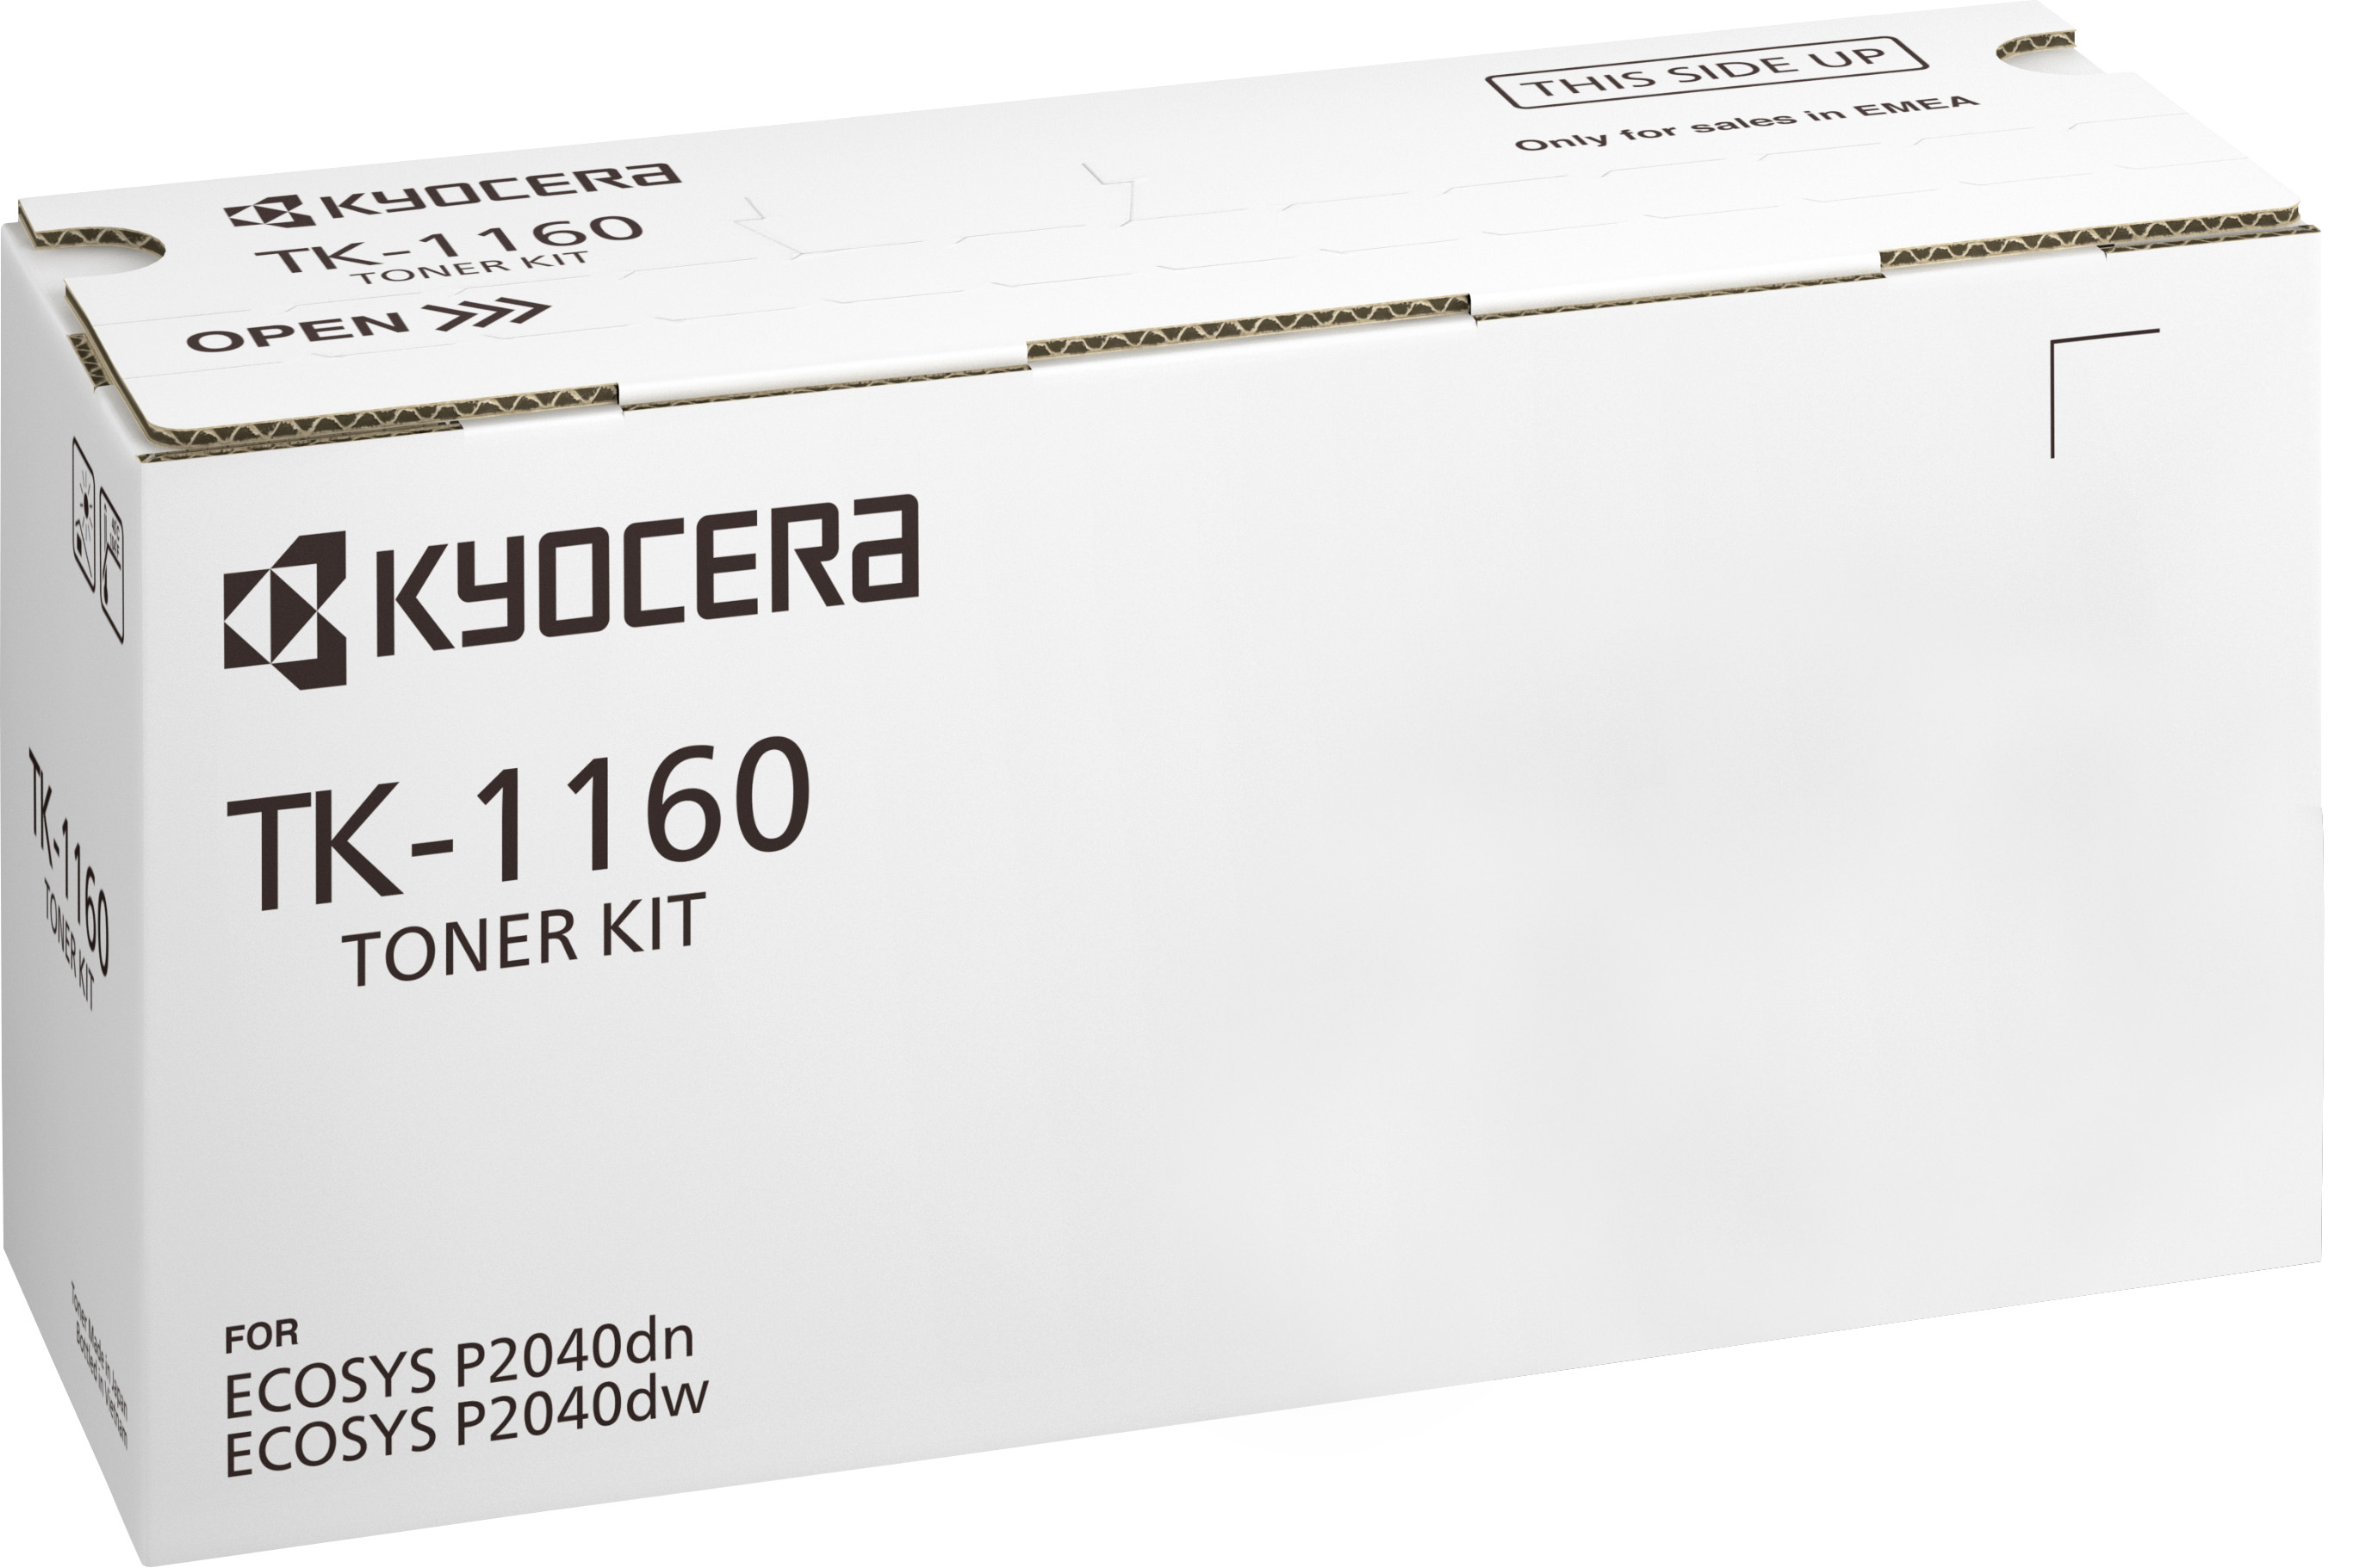 Kyocera Lasertoner TK-1160 schwarz 7.200 Seiten